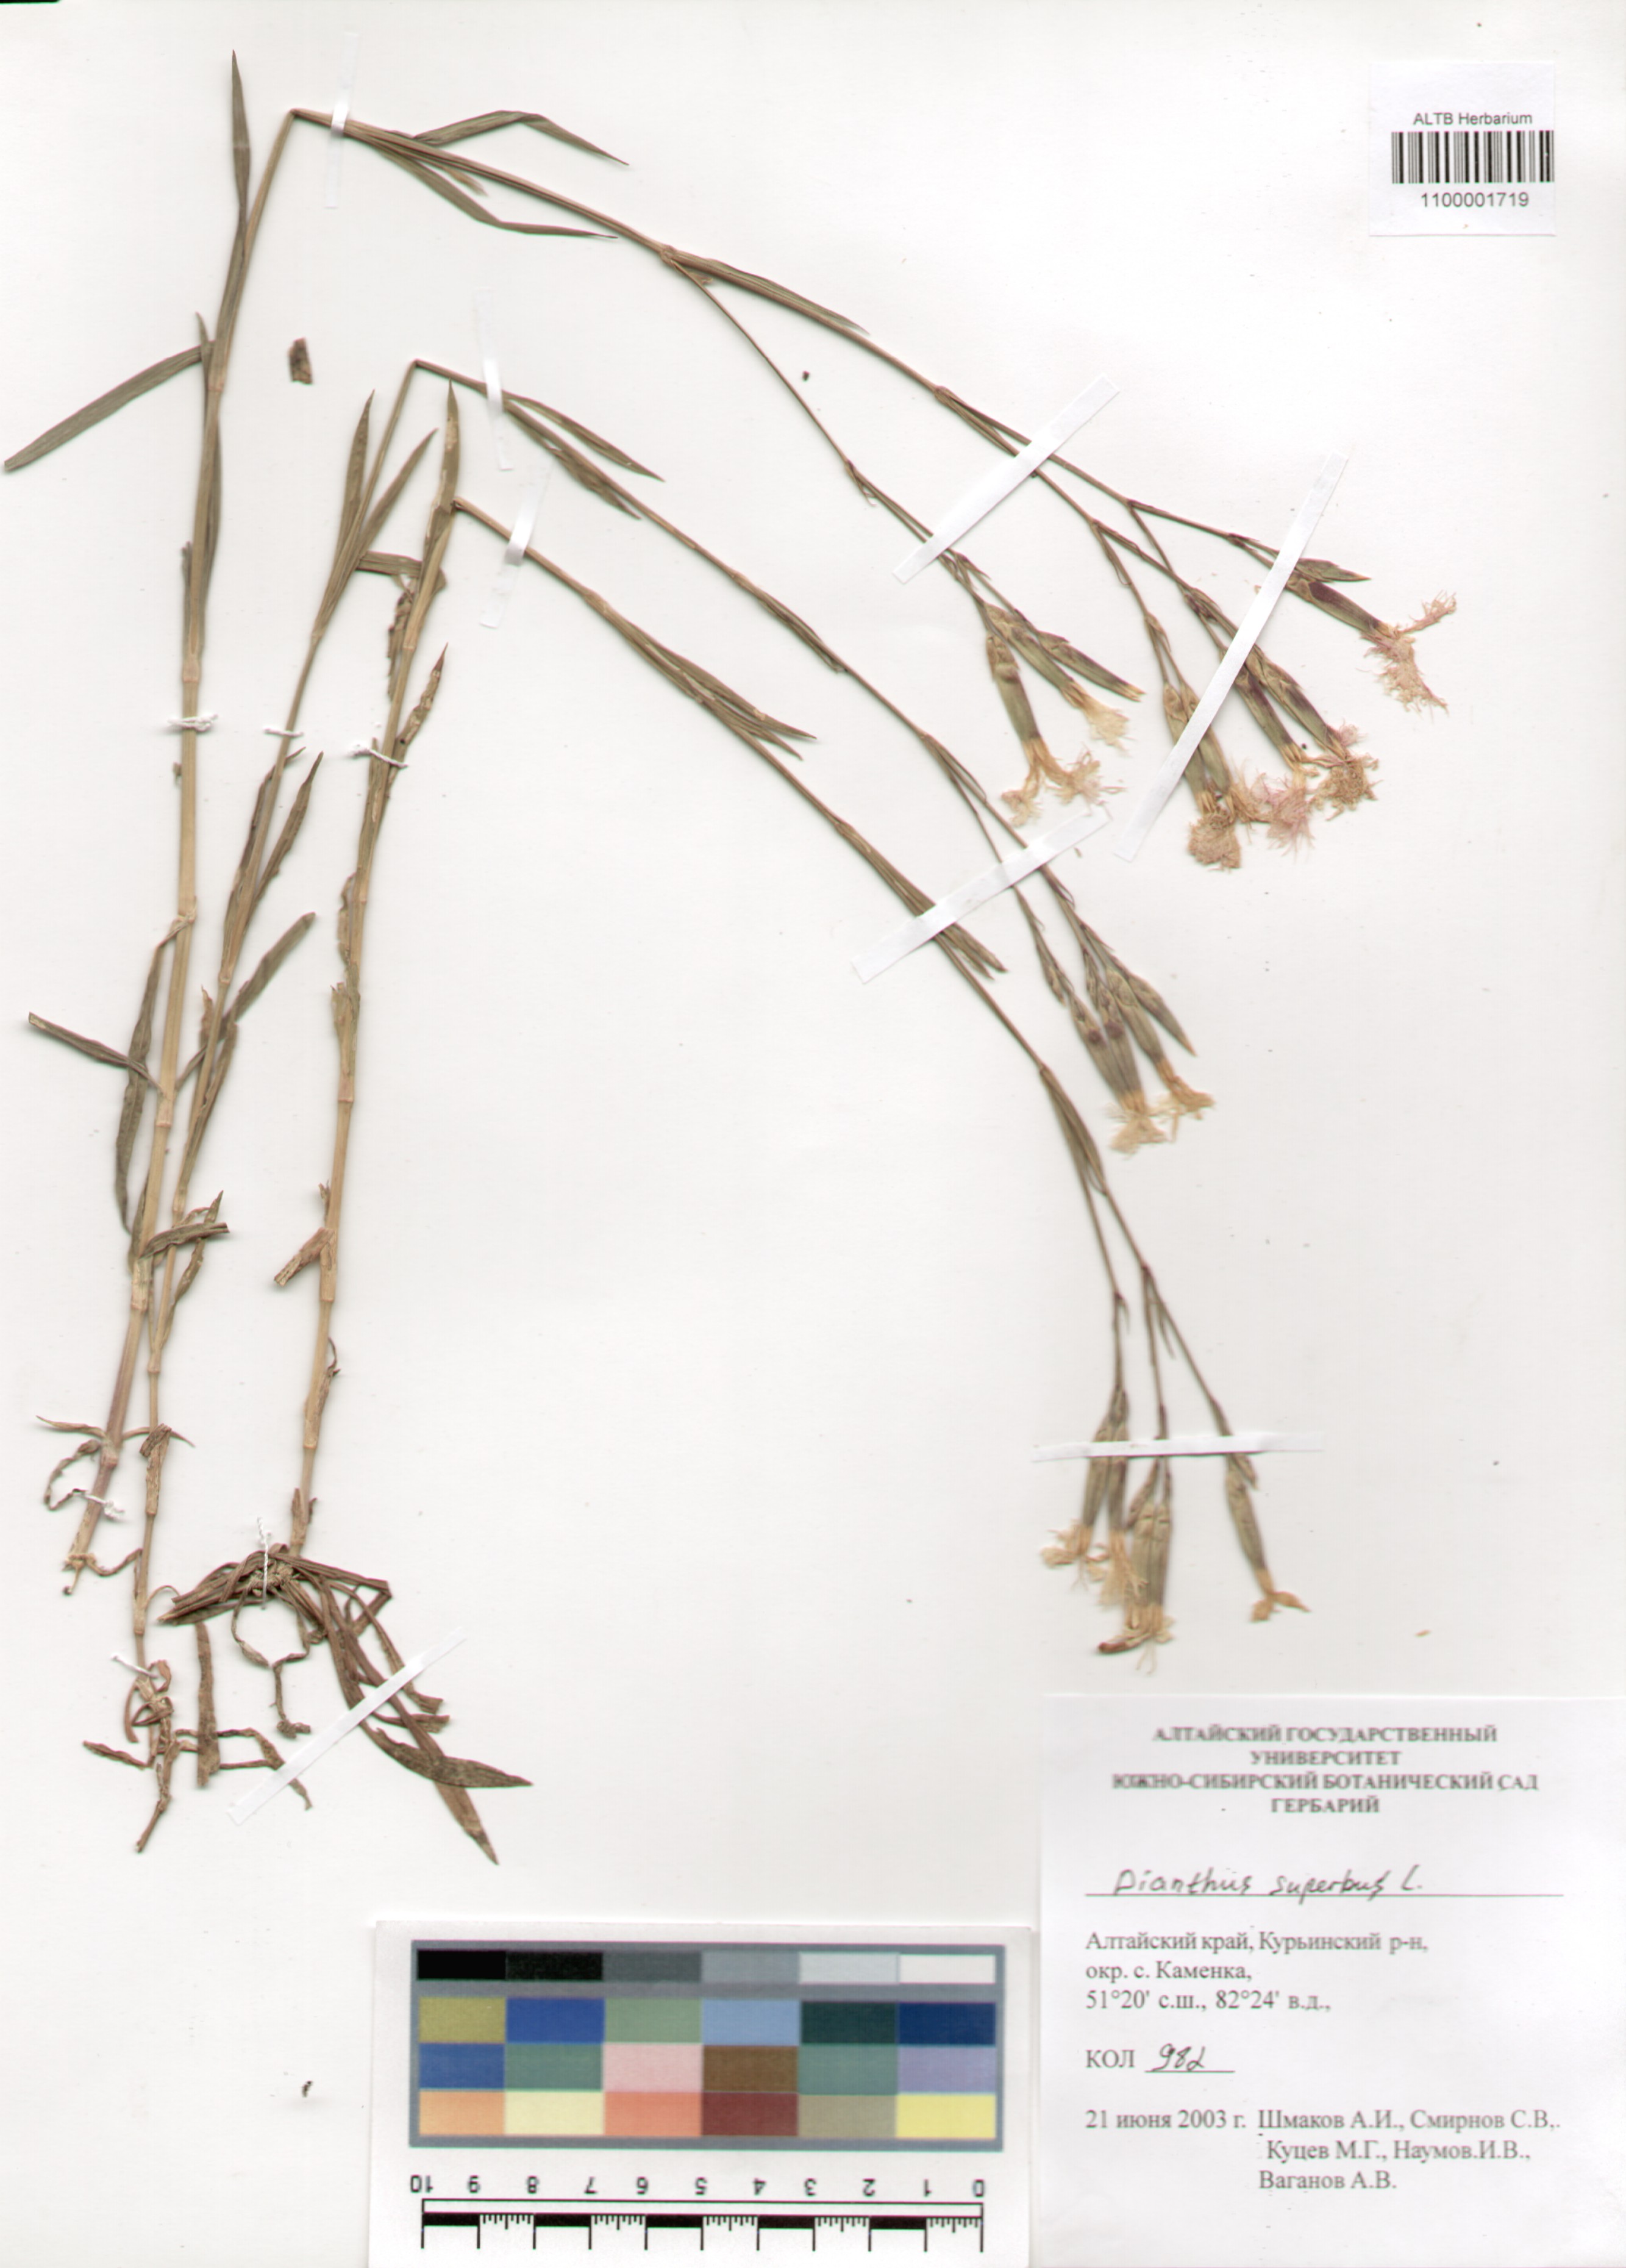 Caryophyllaceae,Dianthus superbus L.